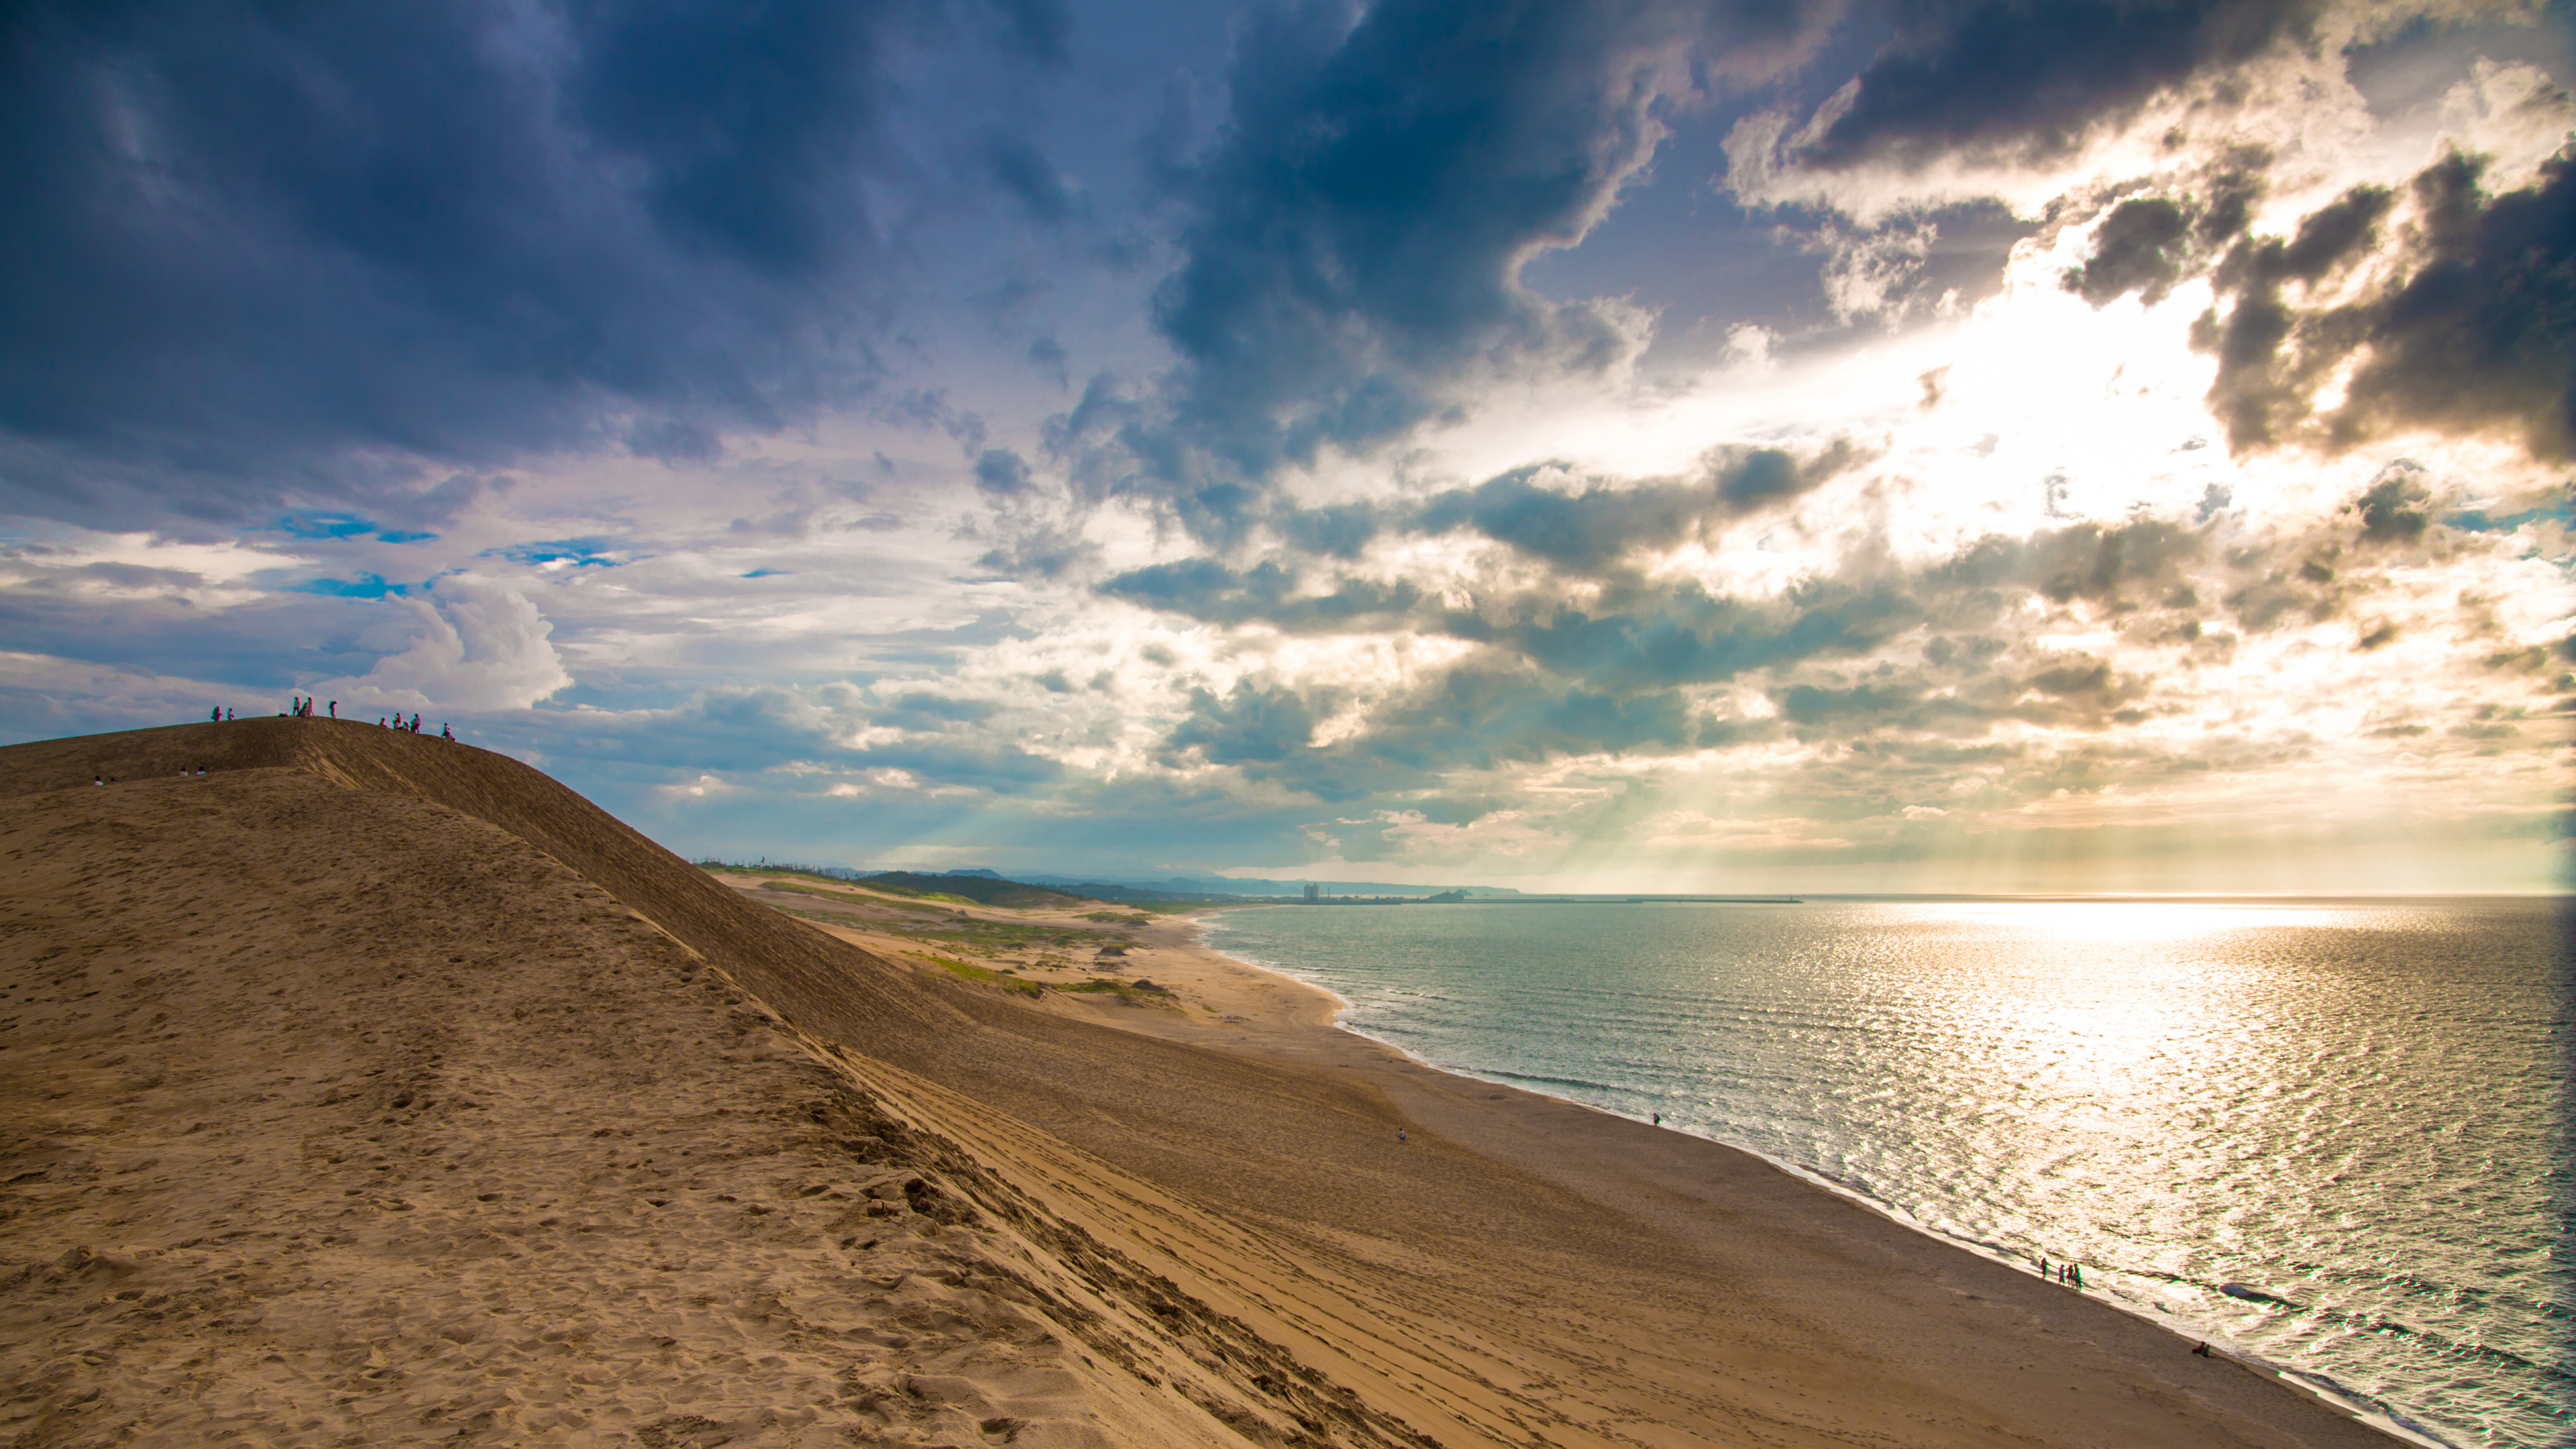 Brauner Sand in Der Nähe Von Gewässern Unter Blauem Himmel Und Weißen Wolken Tagsüber. Wallpaper in 3840x2160 Resolution